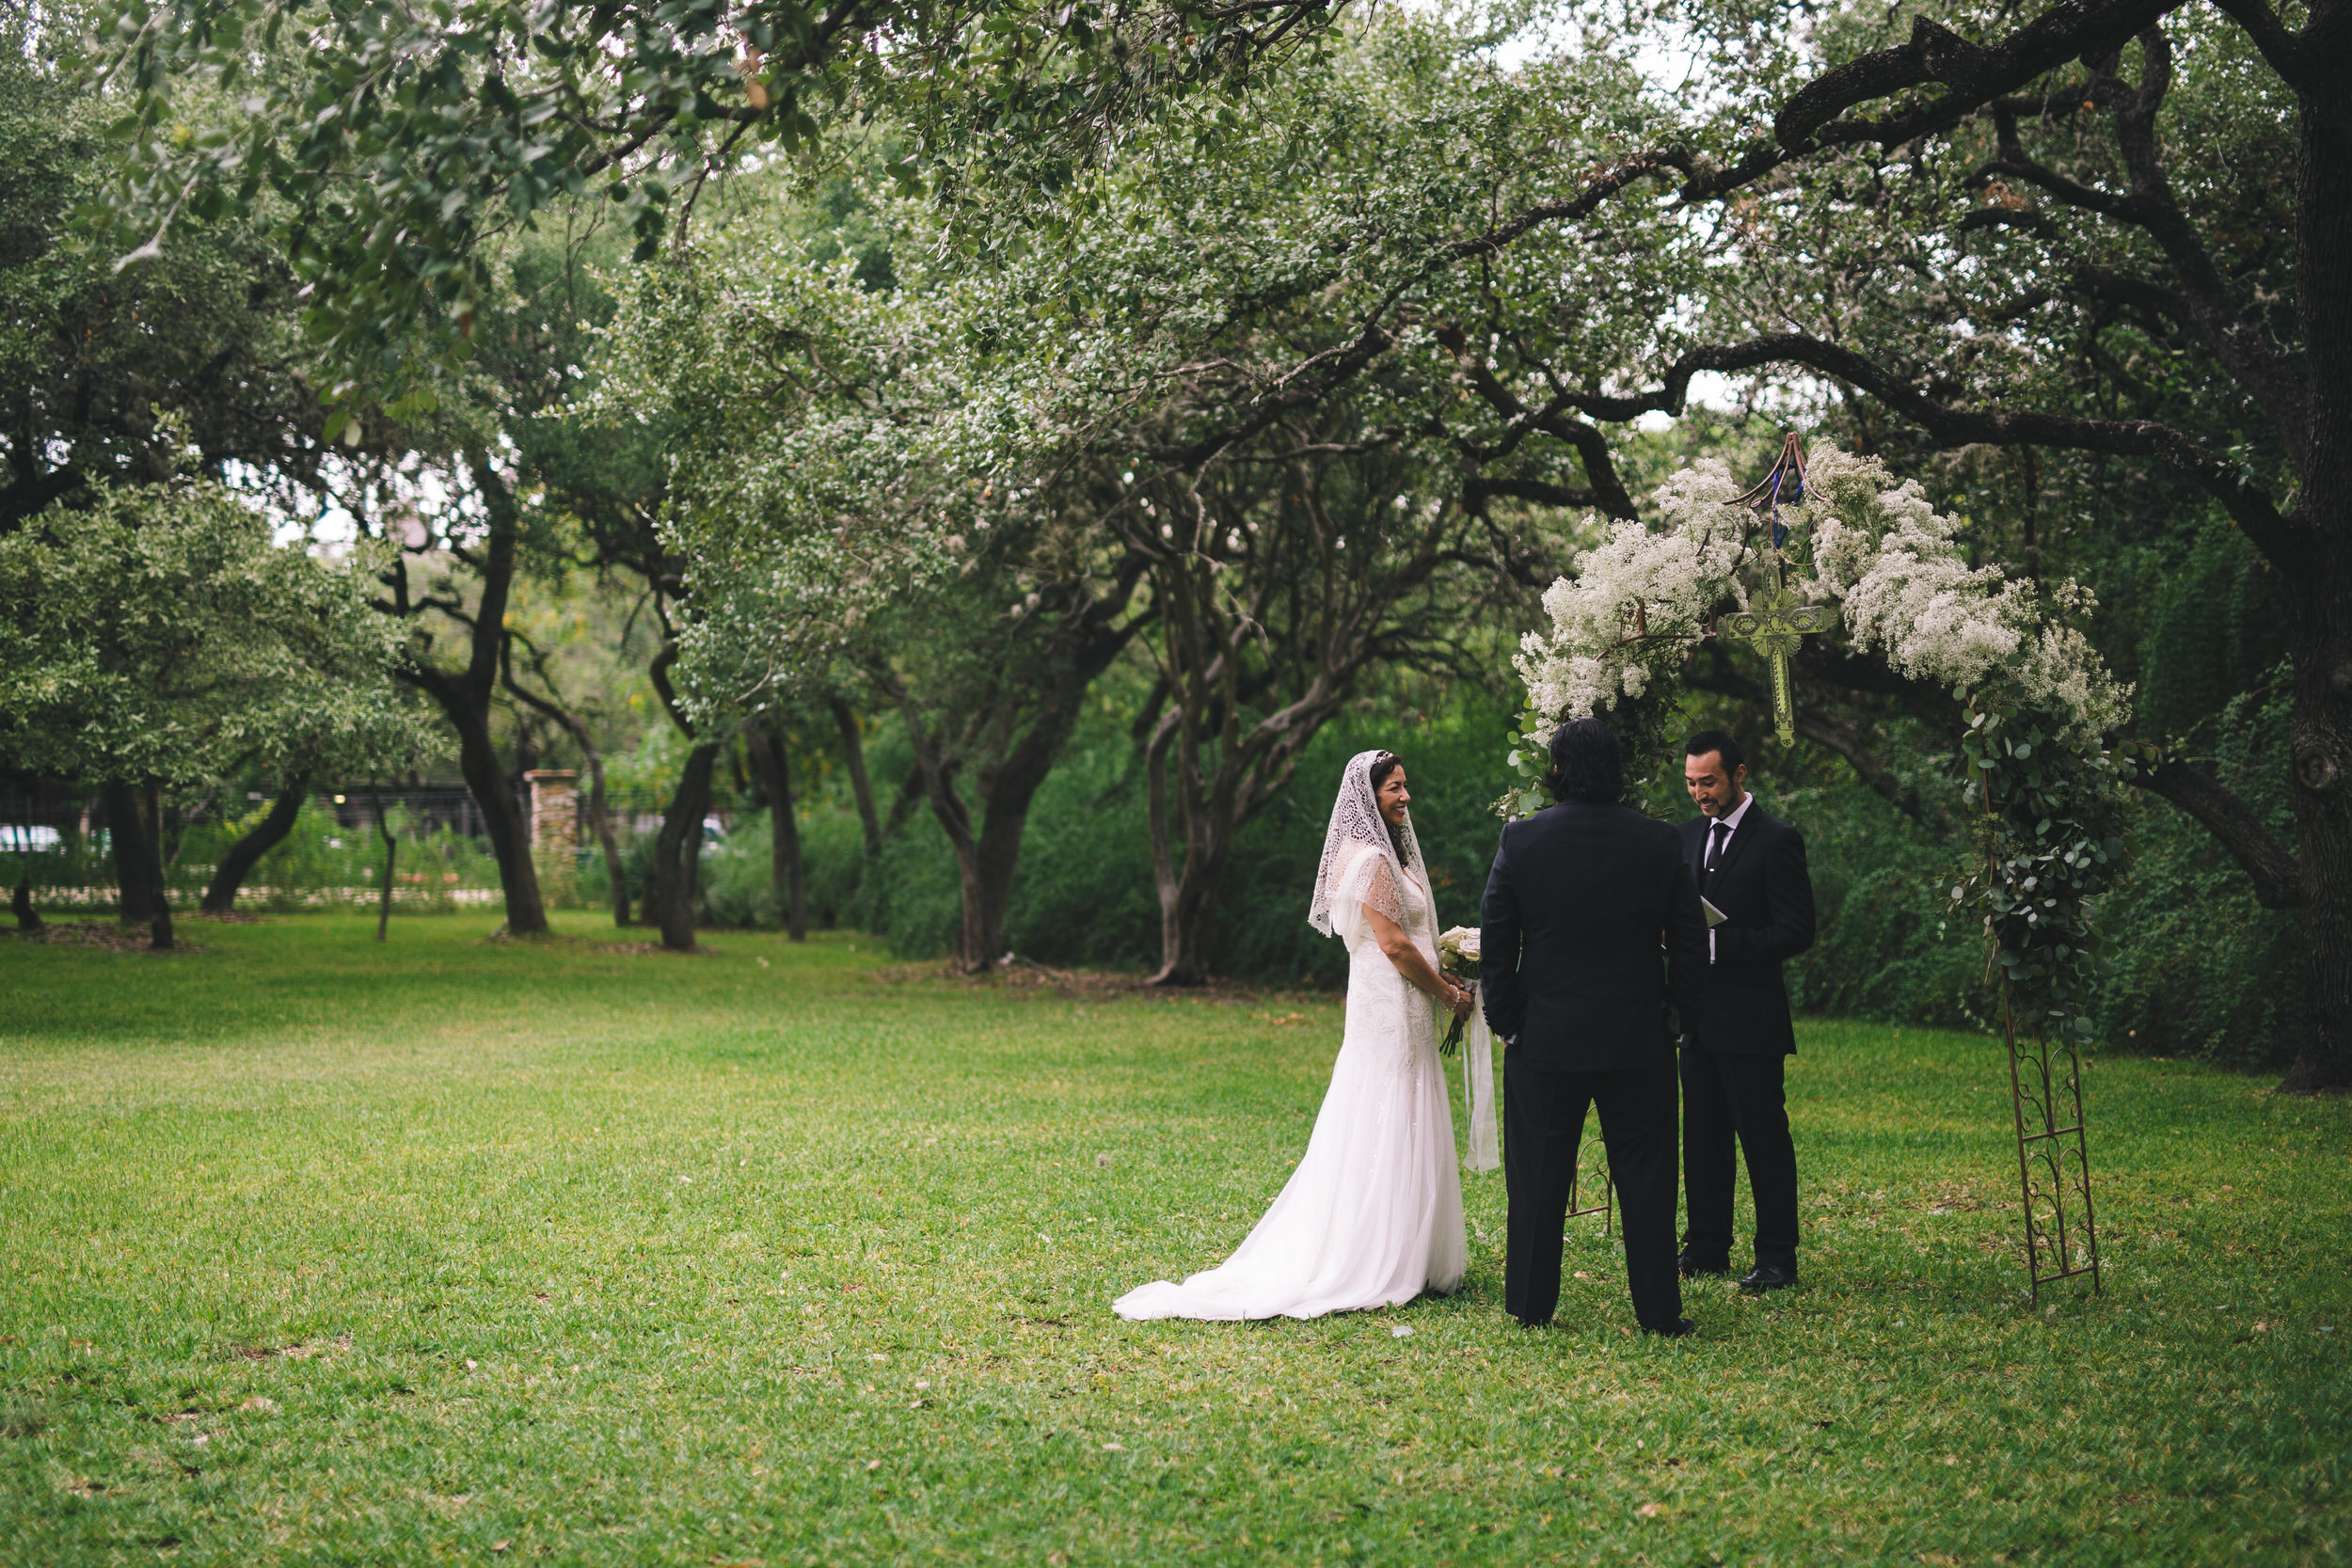 Outdoor Wedding Venues in San Antonio